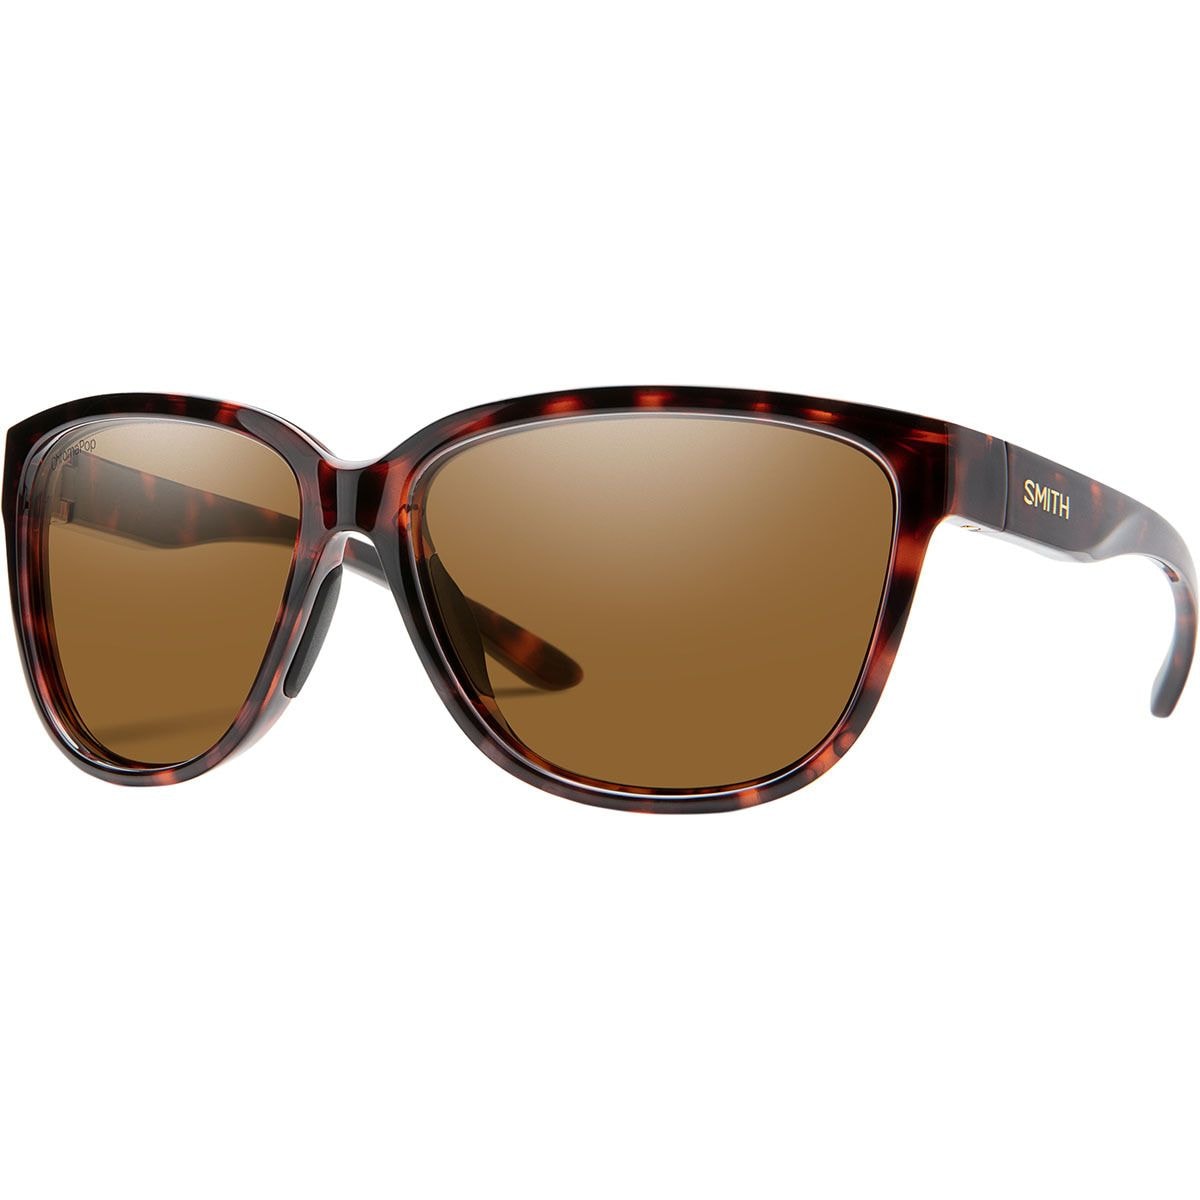 Photos - Sunglasses Smith Monterey ChromaPop Polarized  